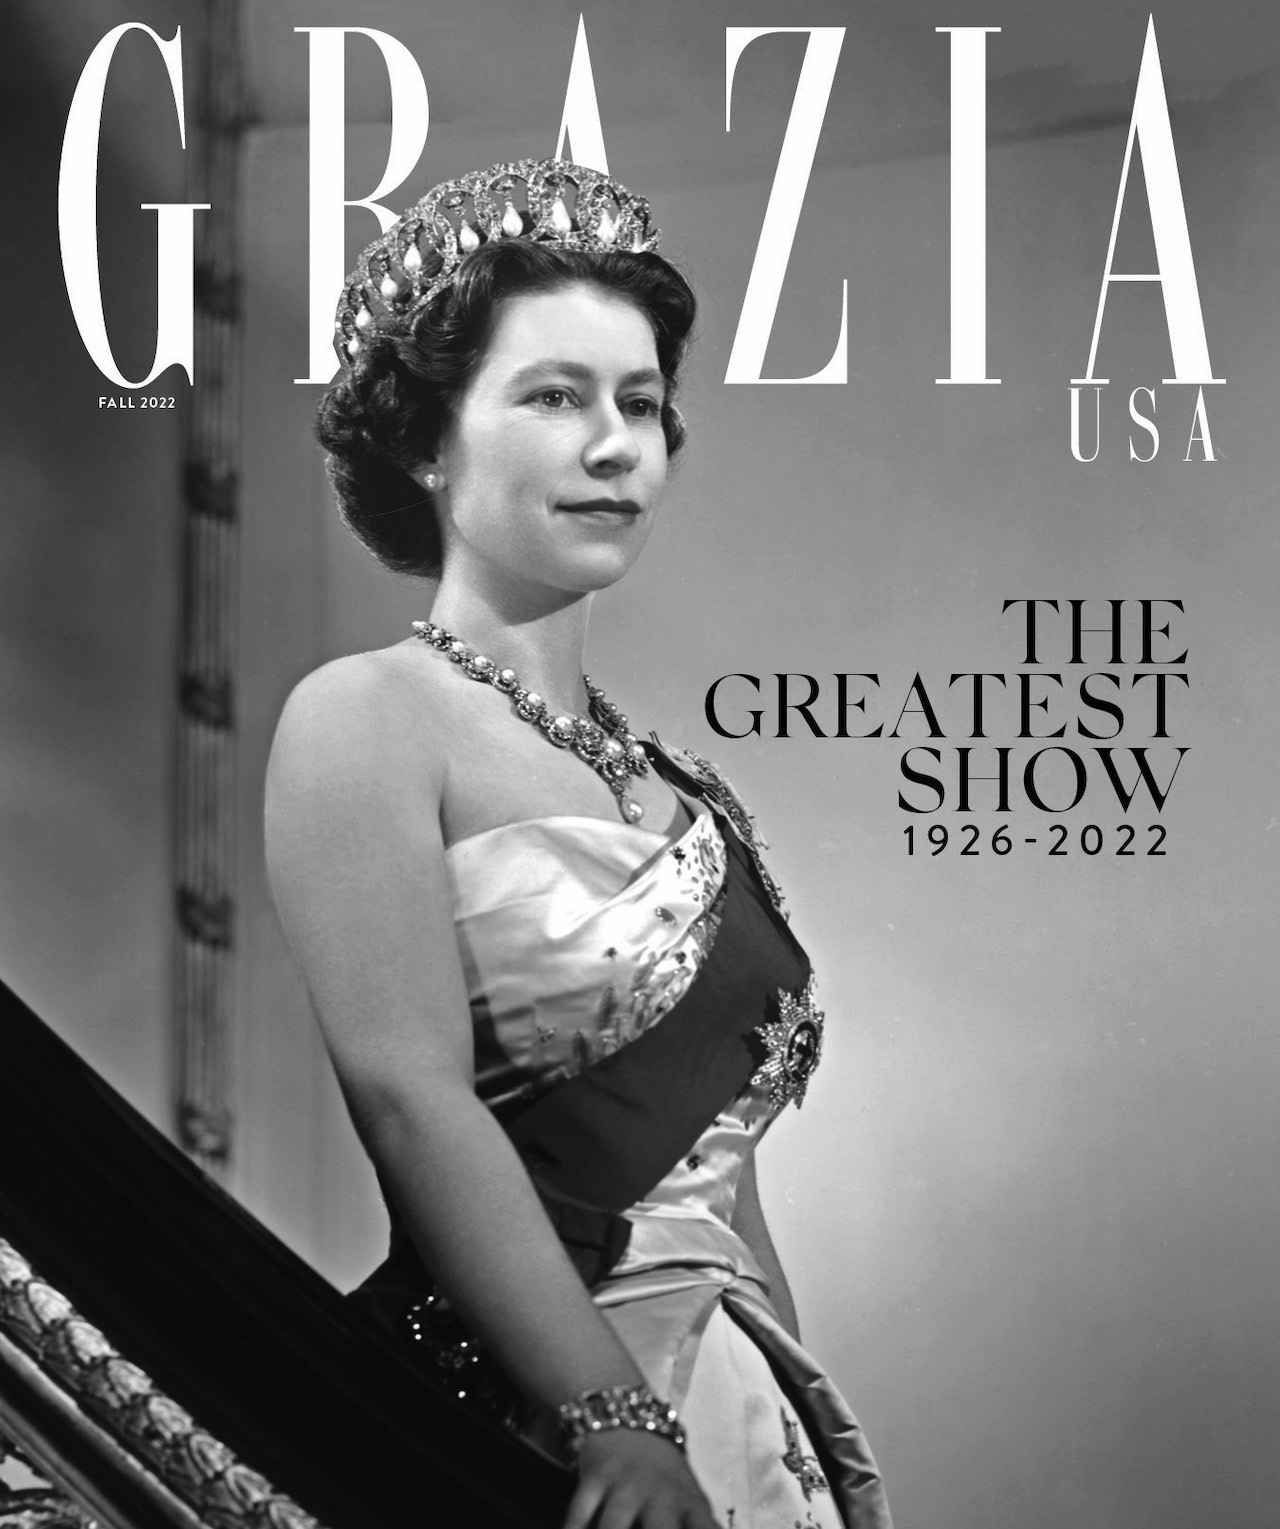 Queen Elizabeth II Tribute